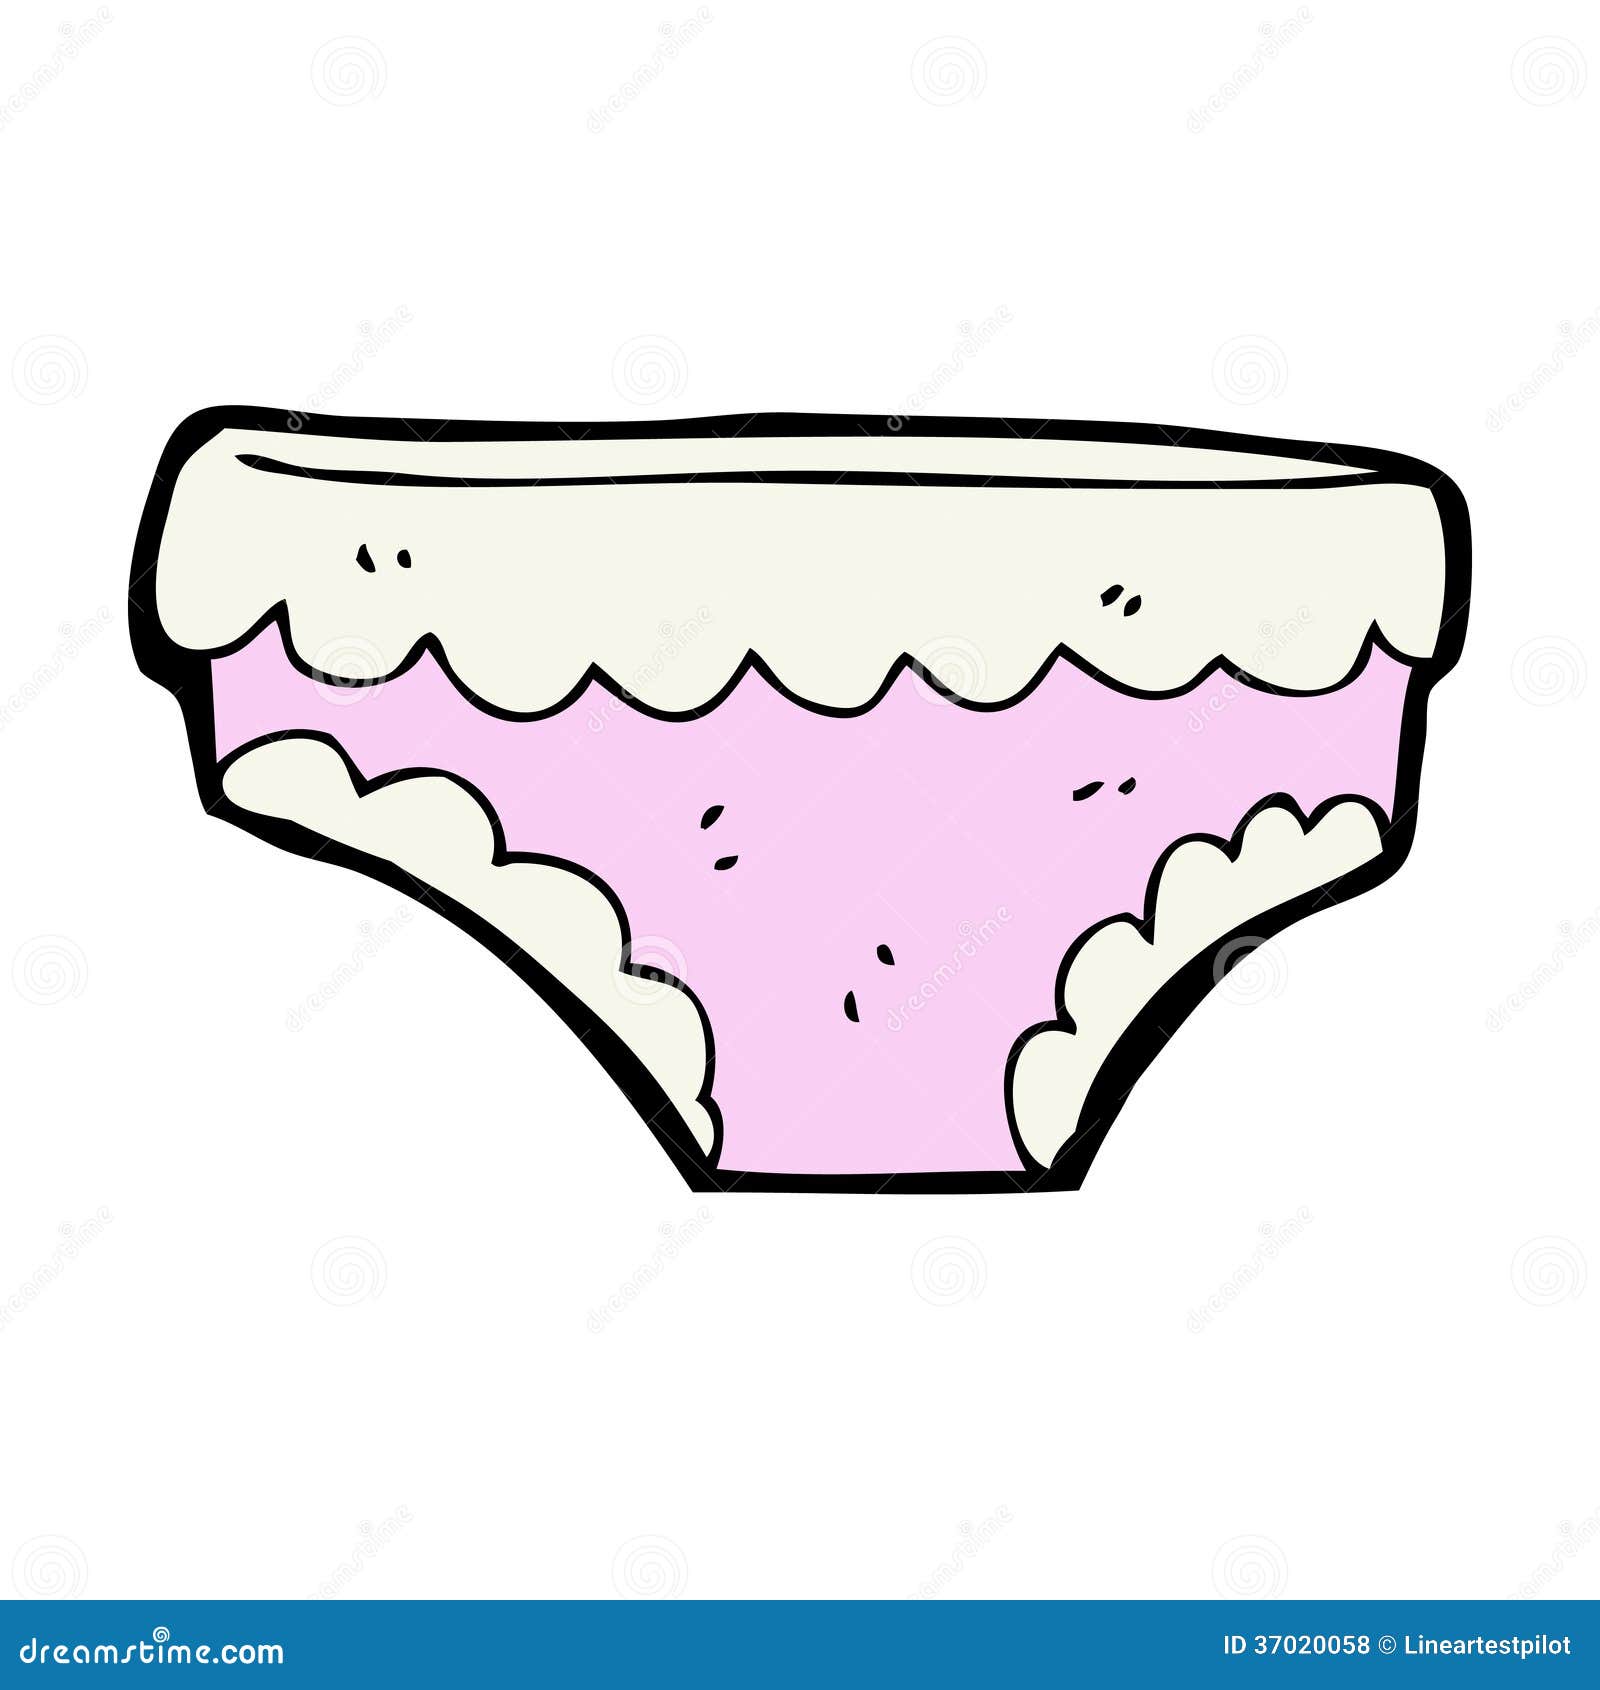 clipart of underwear - photo #31